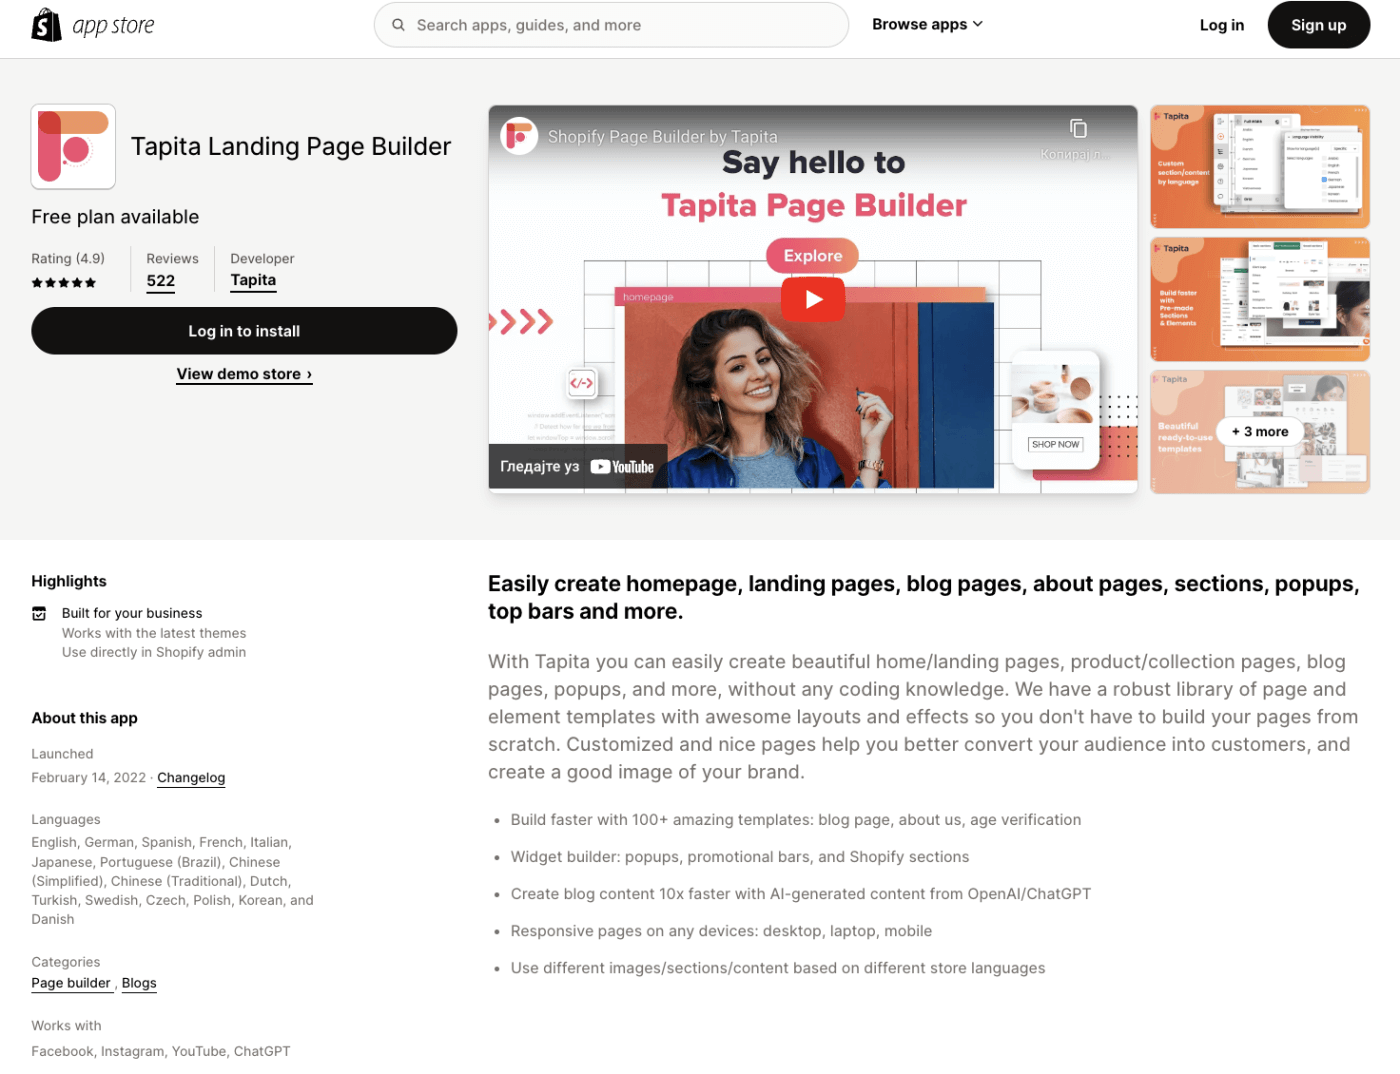 Tapita Landing Page Builder Shopify Page